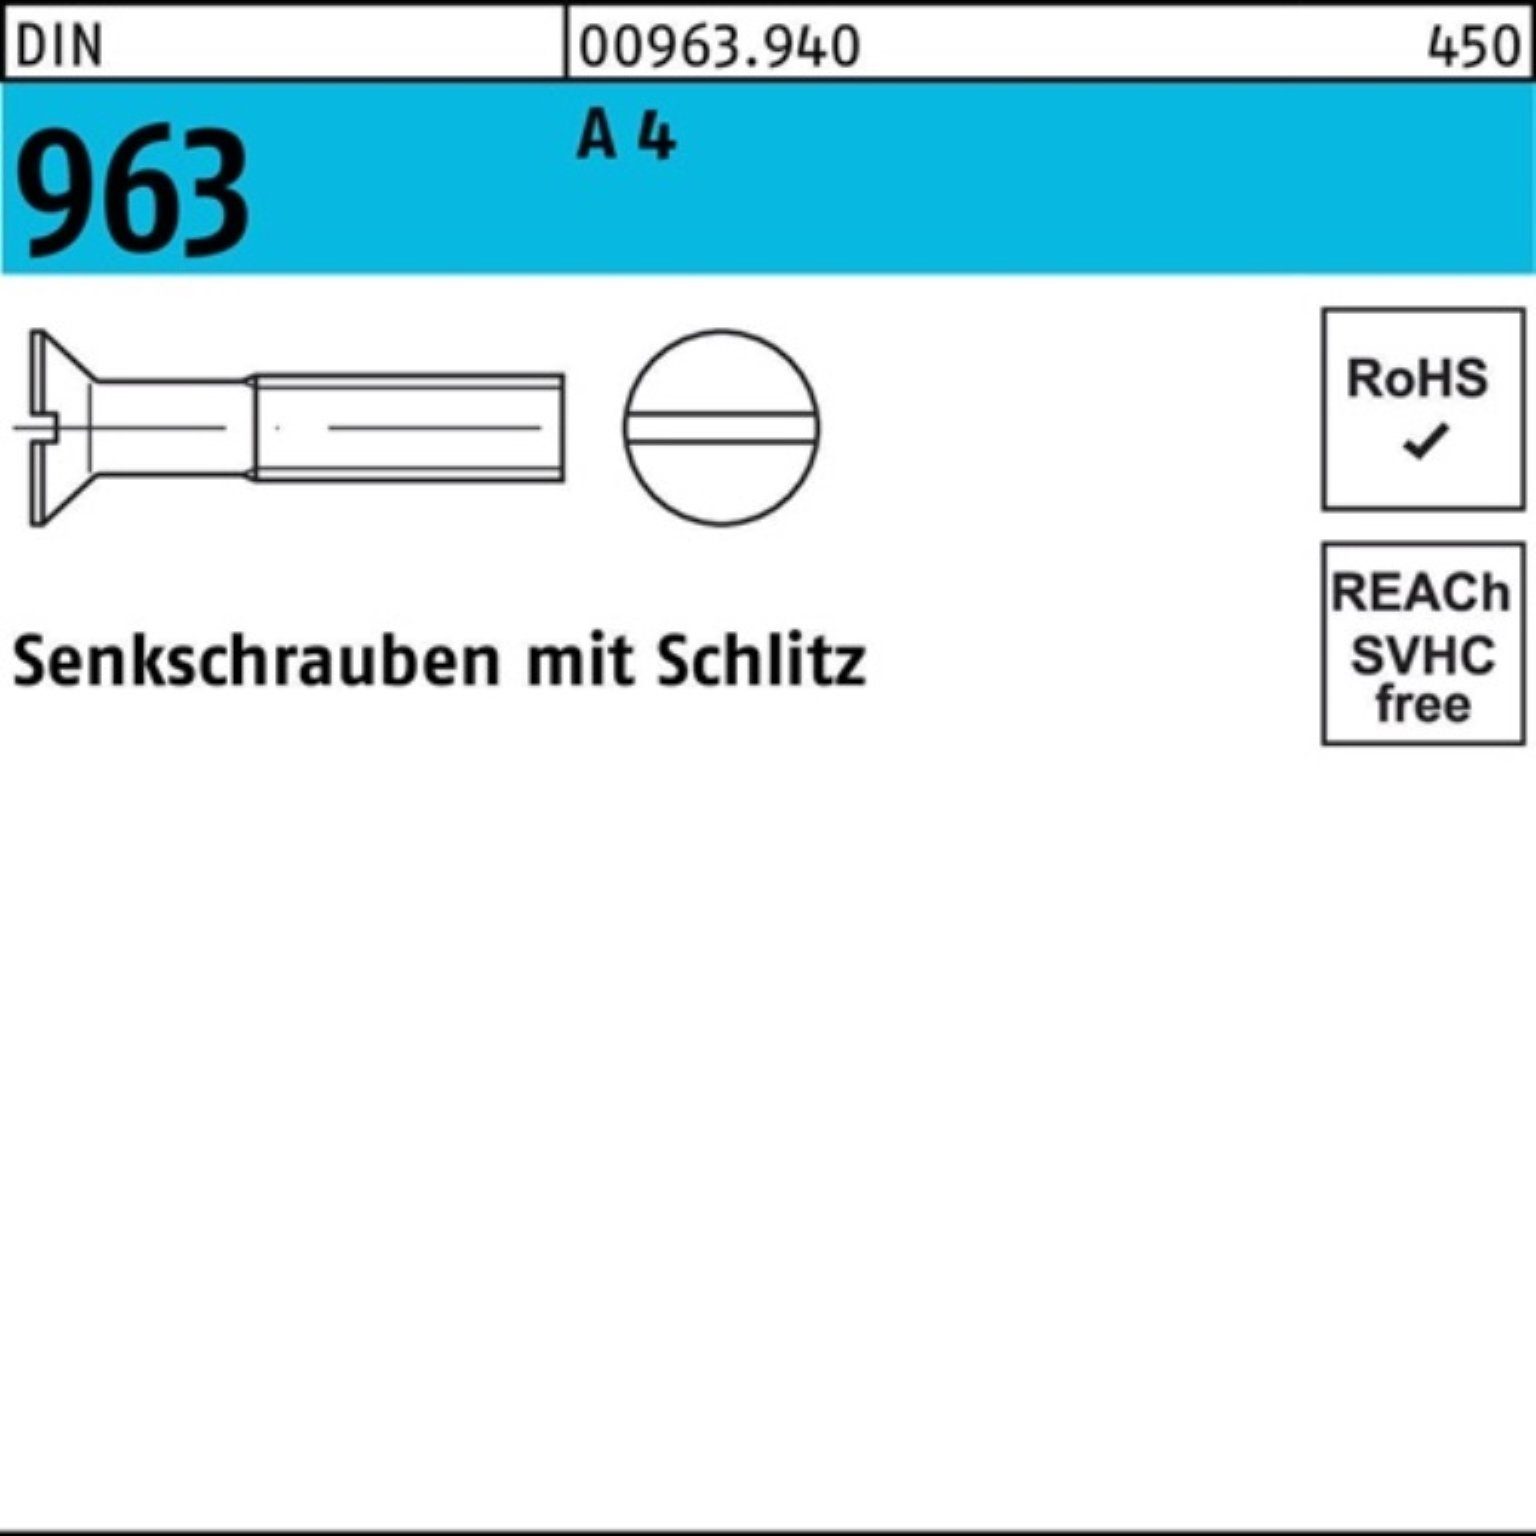 Reyher Senkschraube 200er Pack Senkschraube 200 M2x A 4 963 DIN A 4 DIN Schlitz 963 Stück